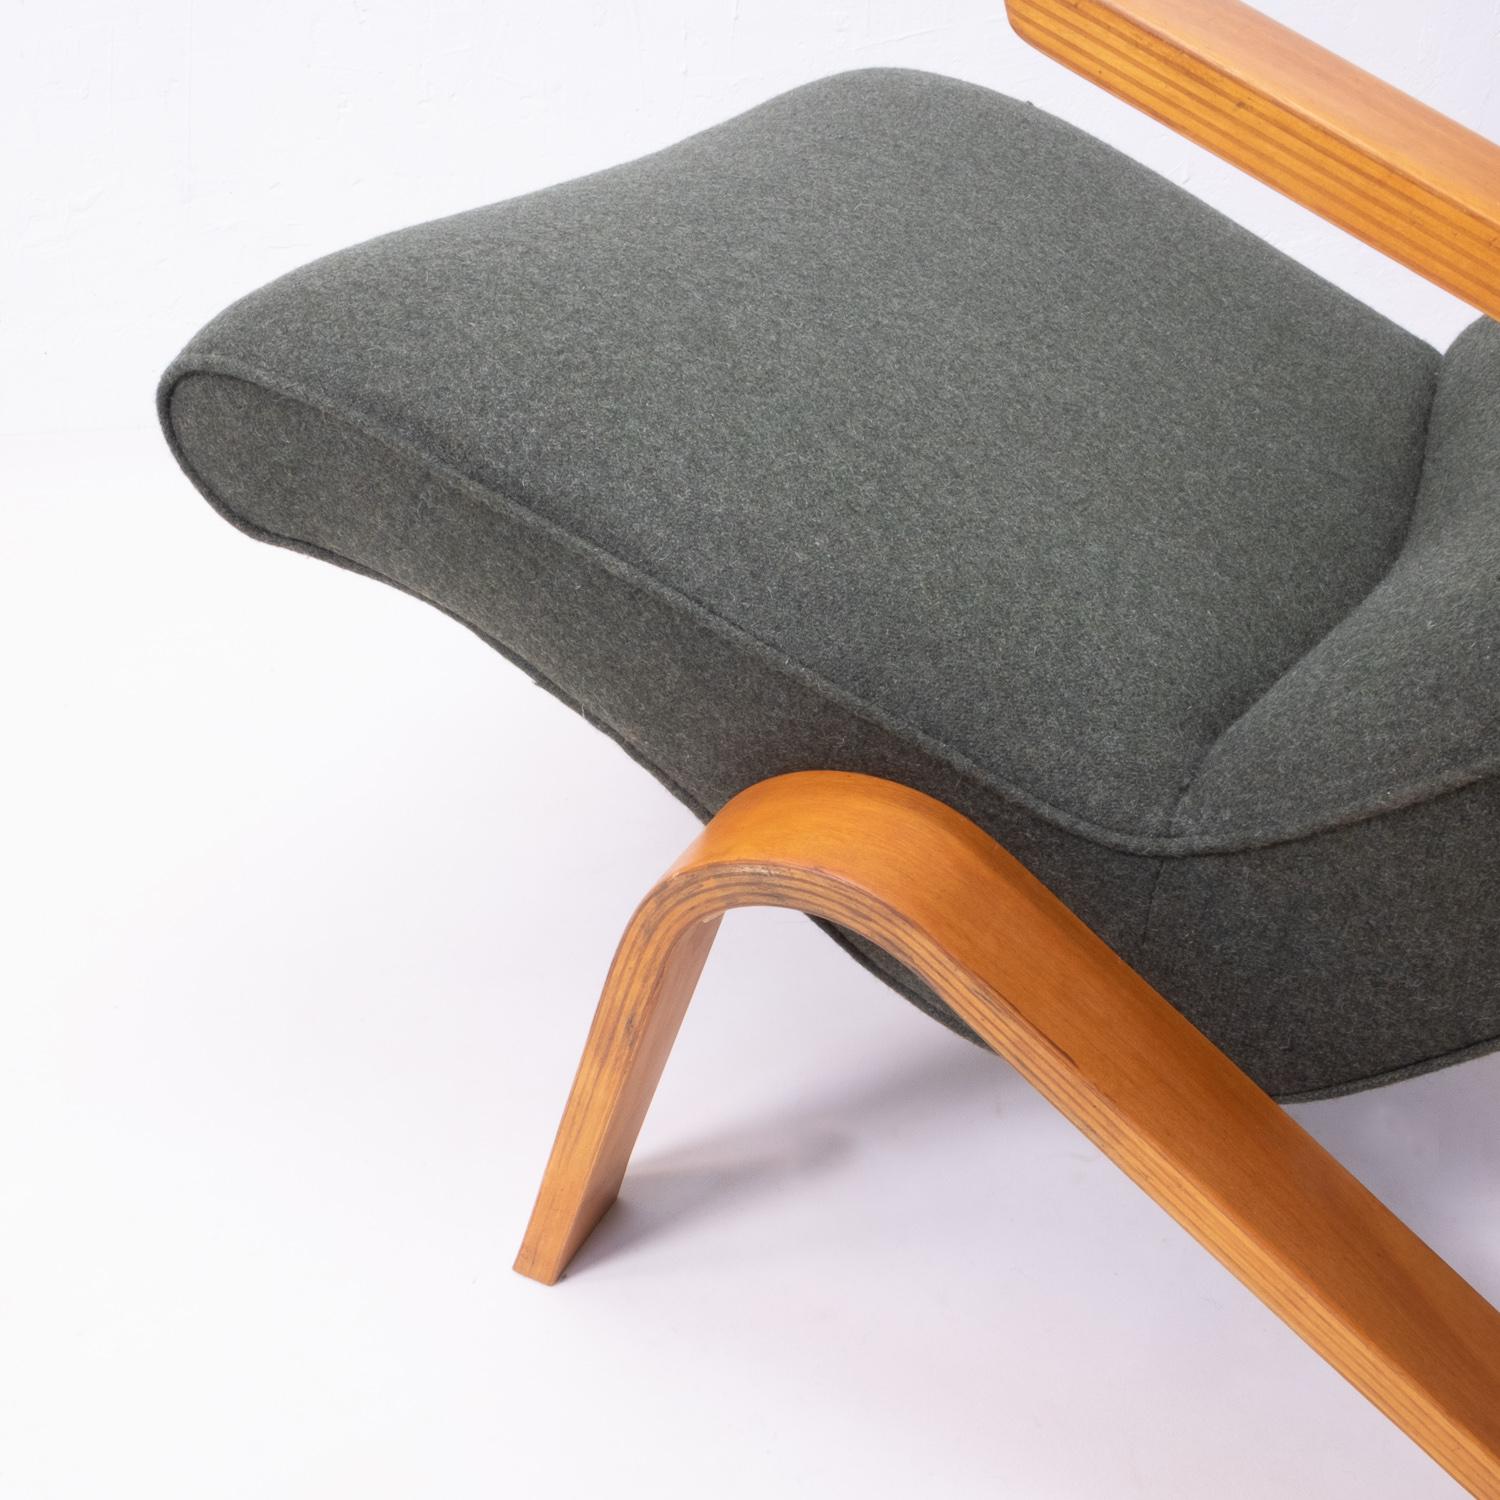 Grasshopper Chair von Eero Saarinen für Knoll

Der Stuhl Grasshopper (oder Modell 61) wurde 1946 von Eero Saarinen für Knoll entworfen. Er war der erste Stuhl, der für die Firma Knoll entworfen wurde, und wurde sofort ein Erfolg.

Saarinen, ein